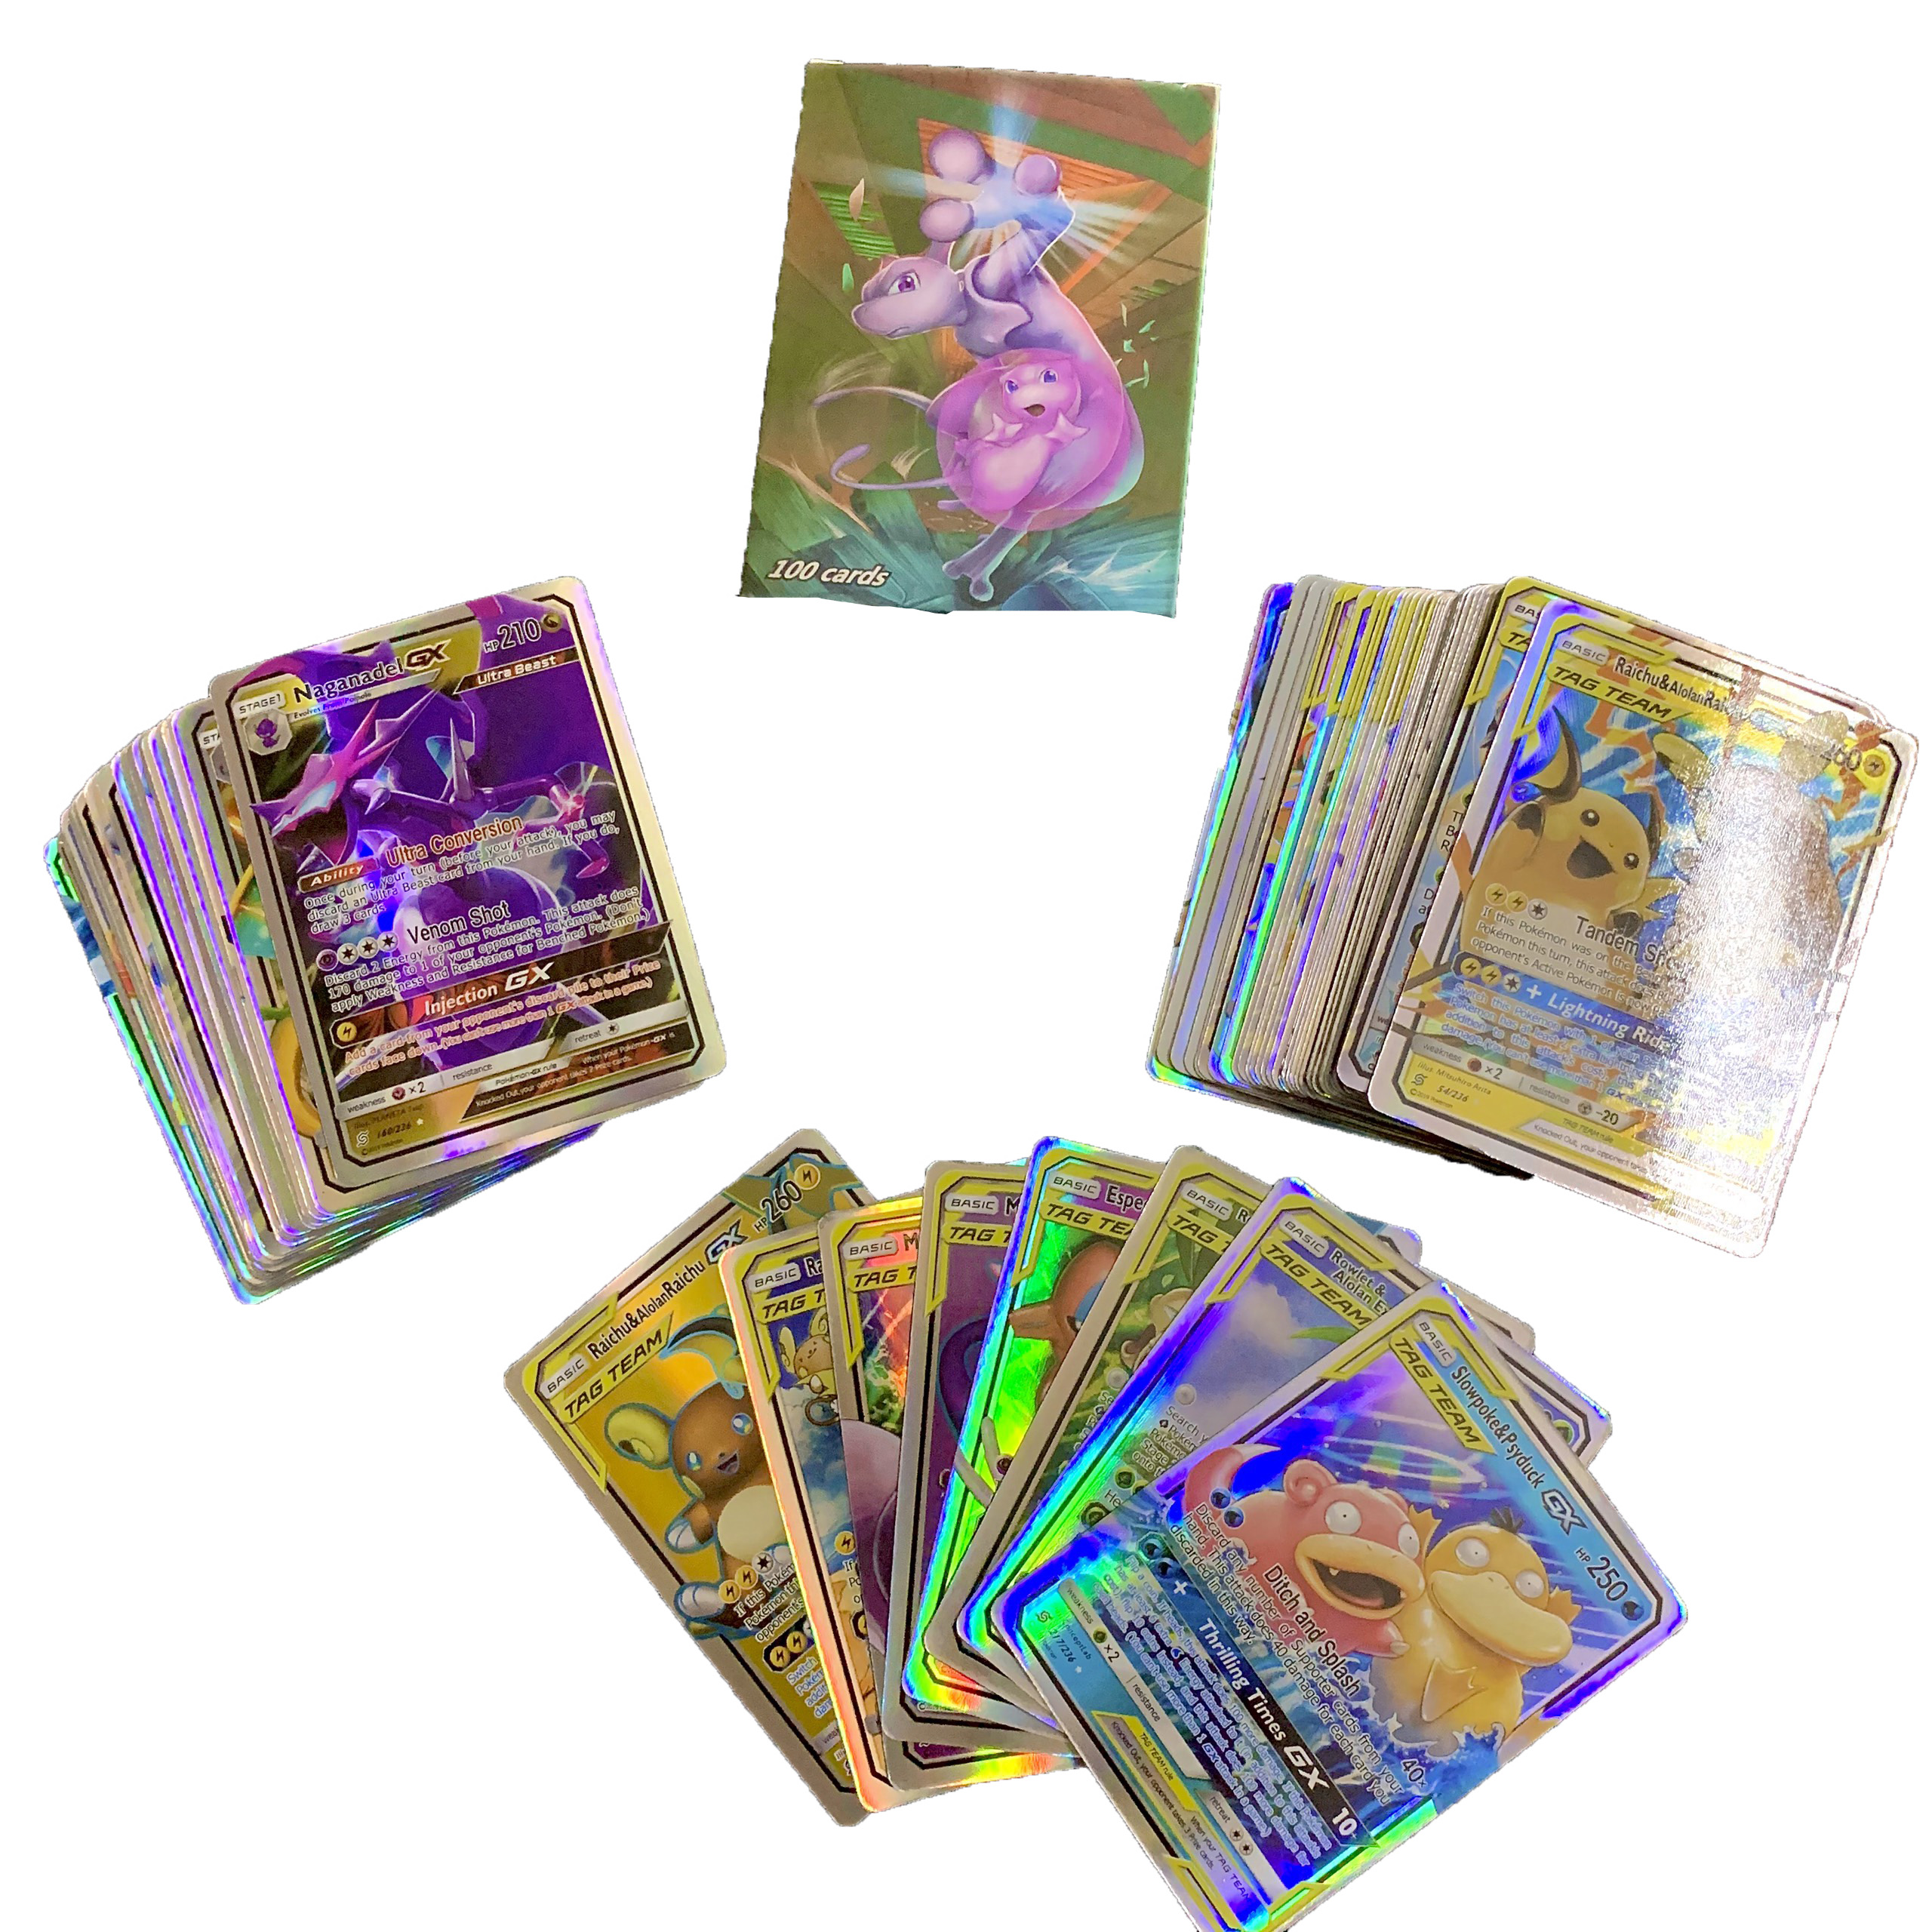 Bộ Thẻ Bài Chơi Pokemon 100 Thẻ (32Gx,62Tagteam,6Trainer) Chơi Đối Kháng New Đẹp